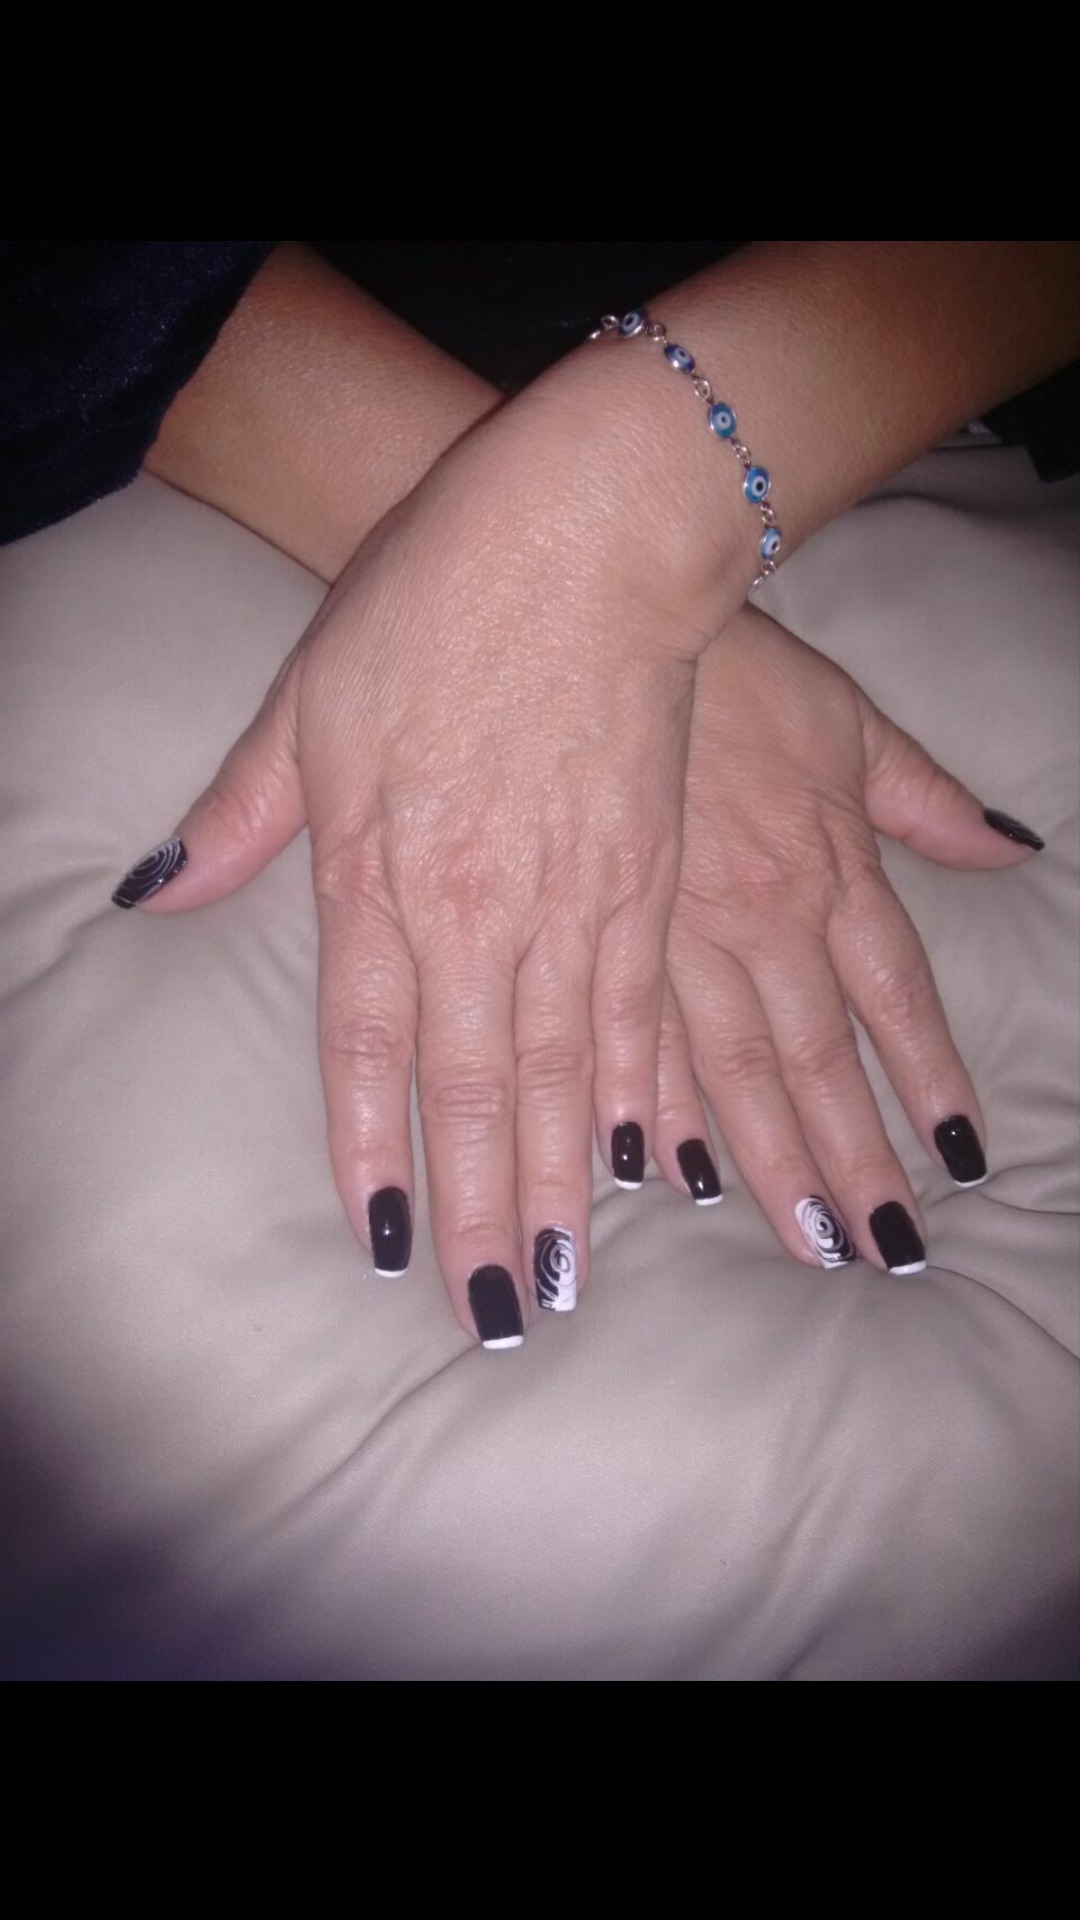 O preto e o branco que nós amamos  💅❤️ #Nailsblack #inlove #White #black  unha manicure e pedicure massoterapeuta assistente esteticista